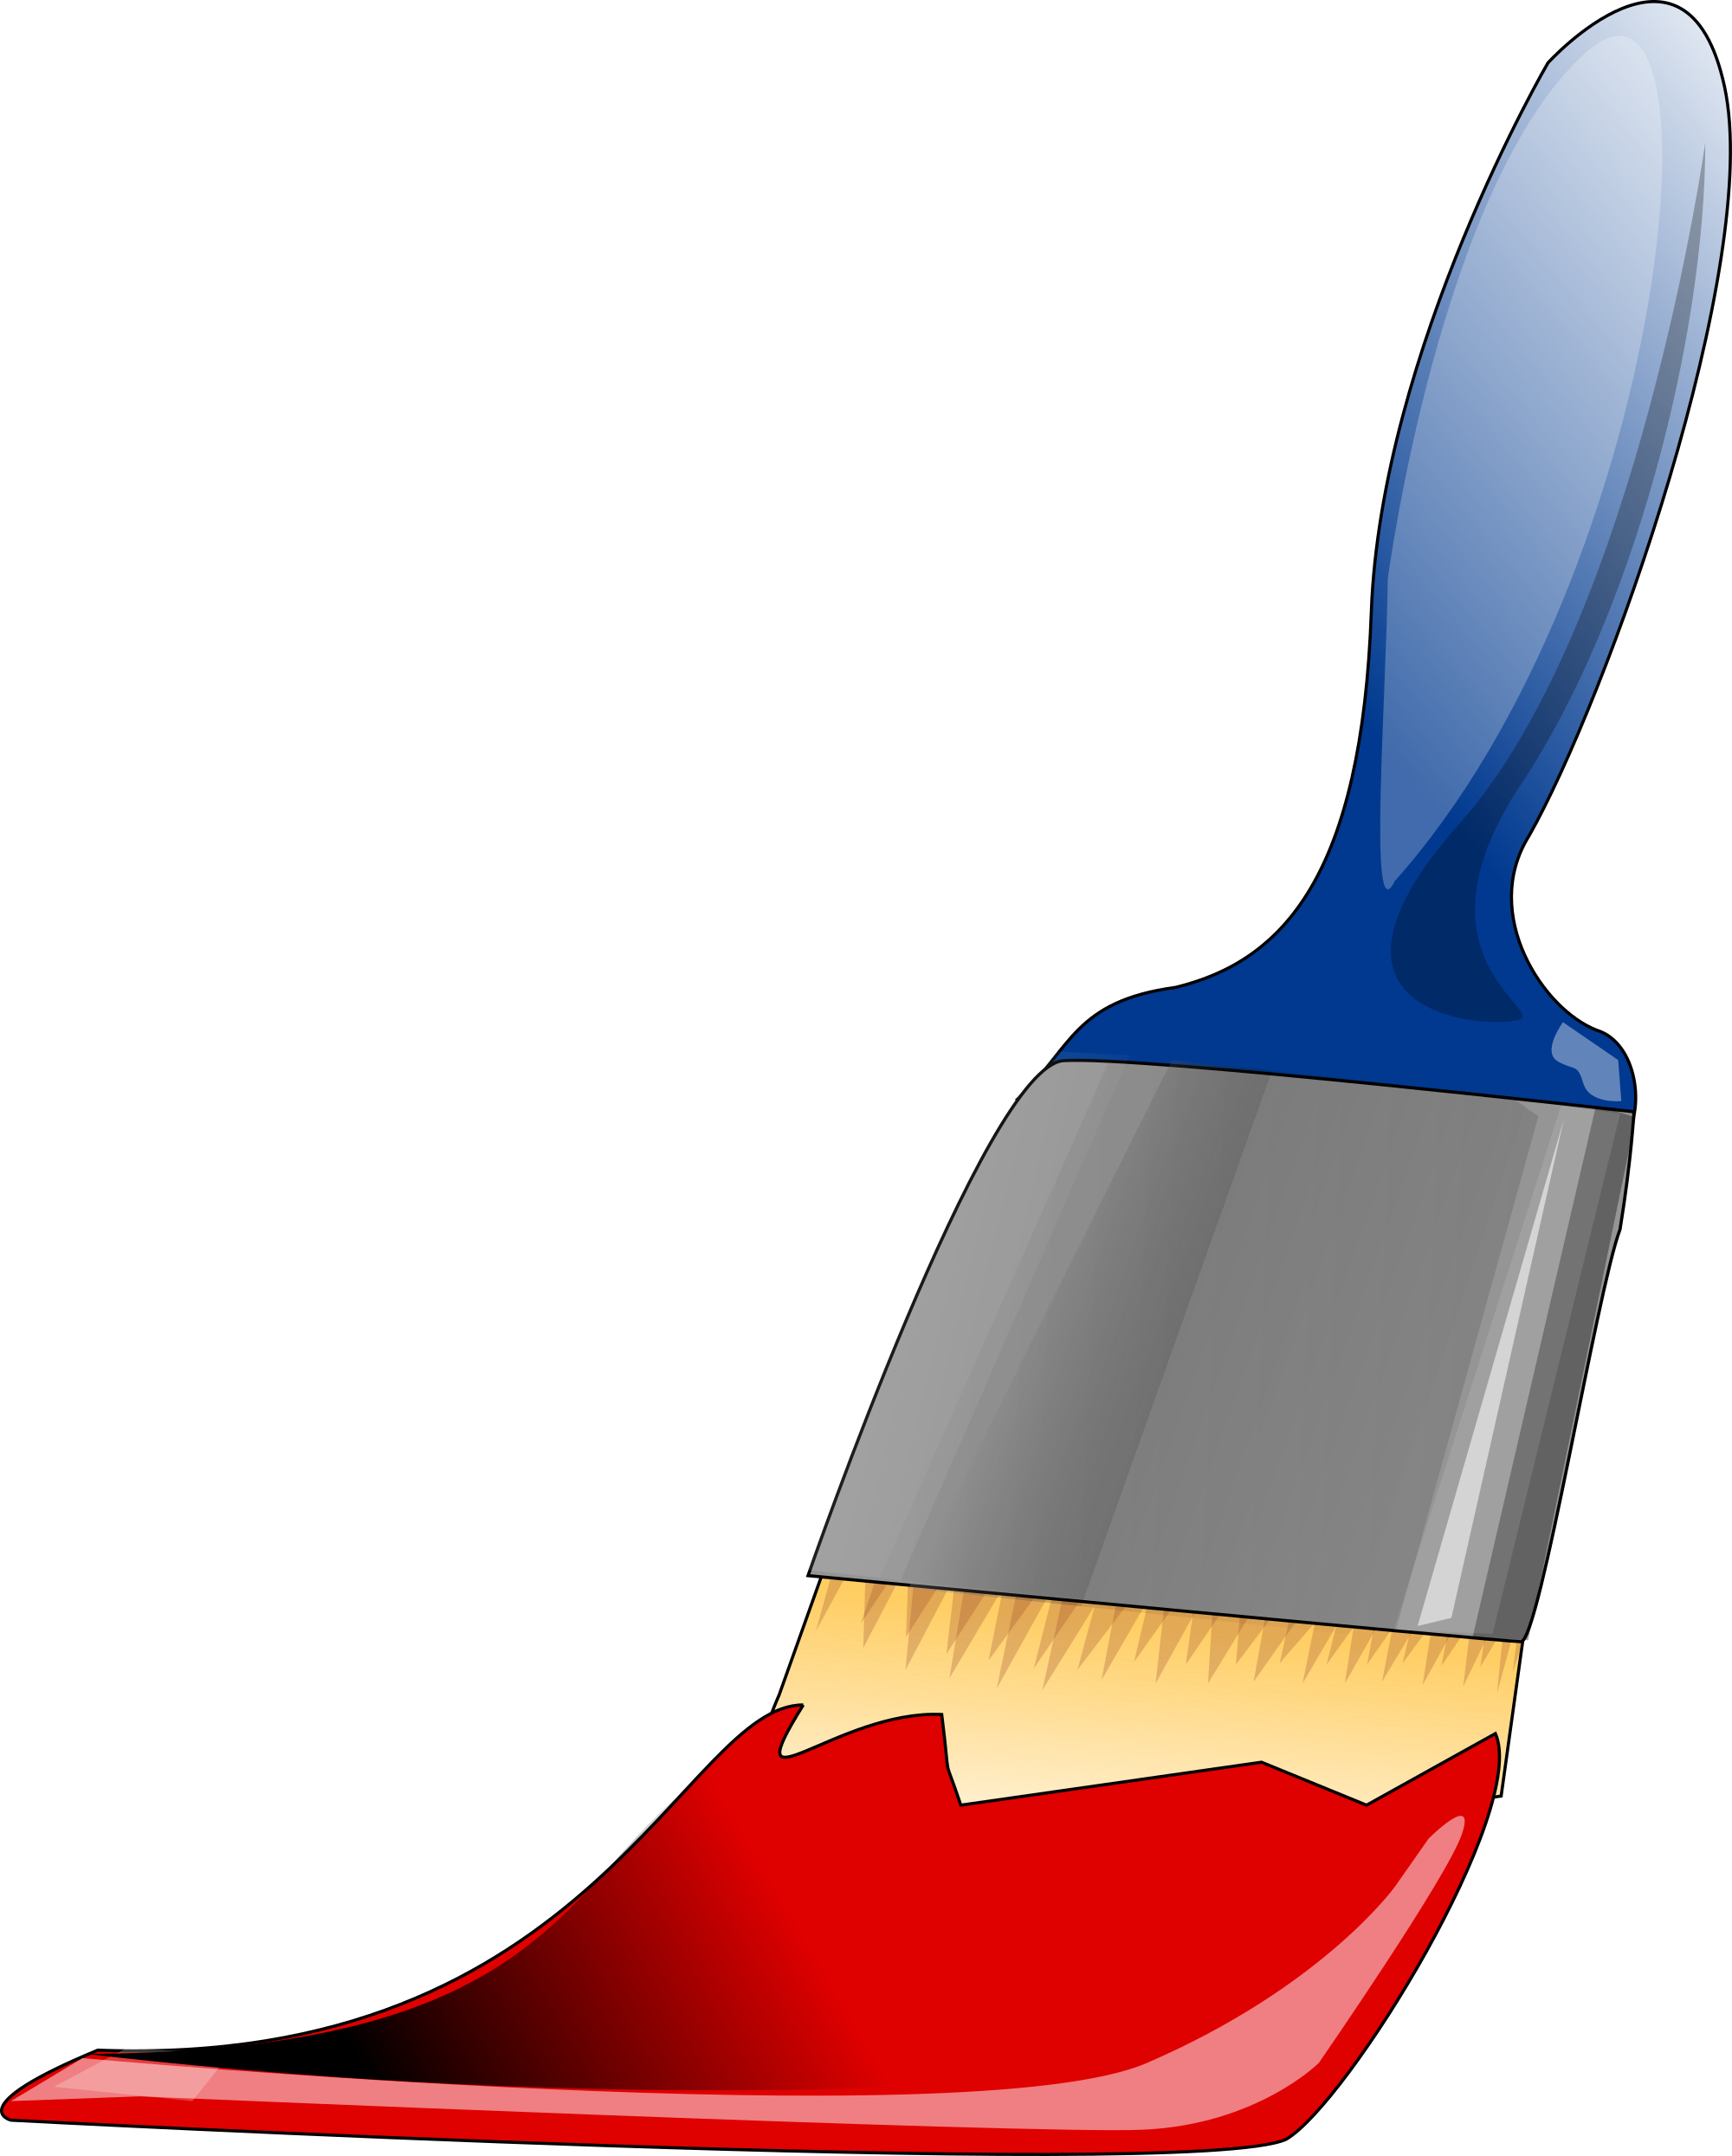 Medium Image - Paint Brush Clip Art (846x1024)